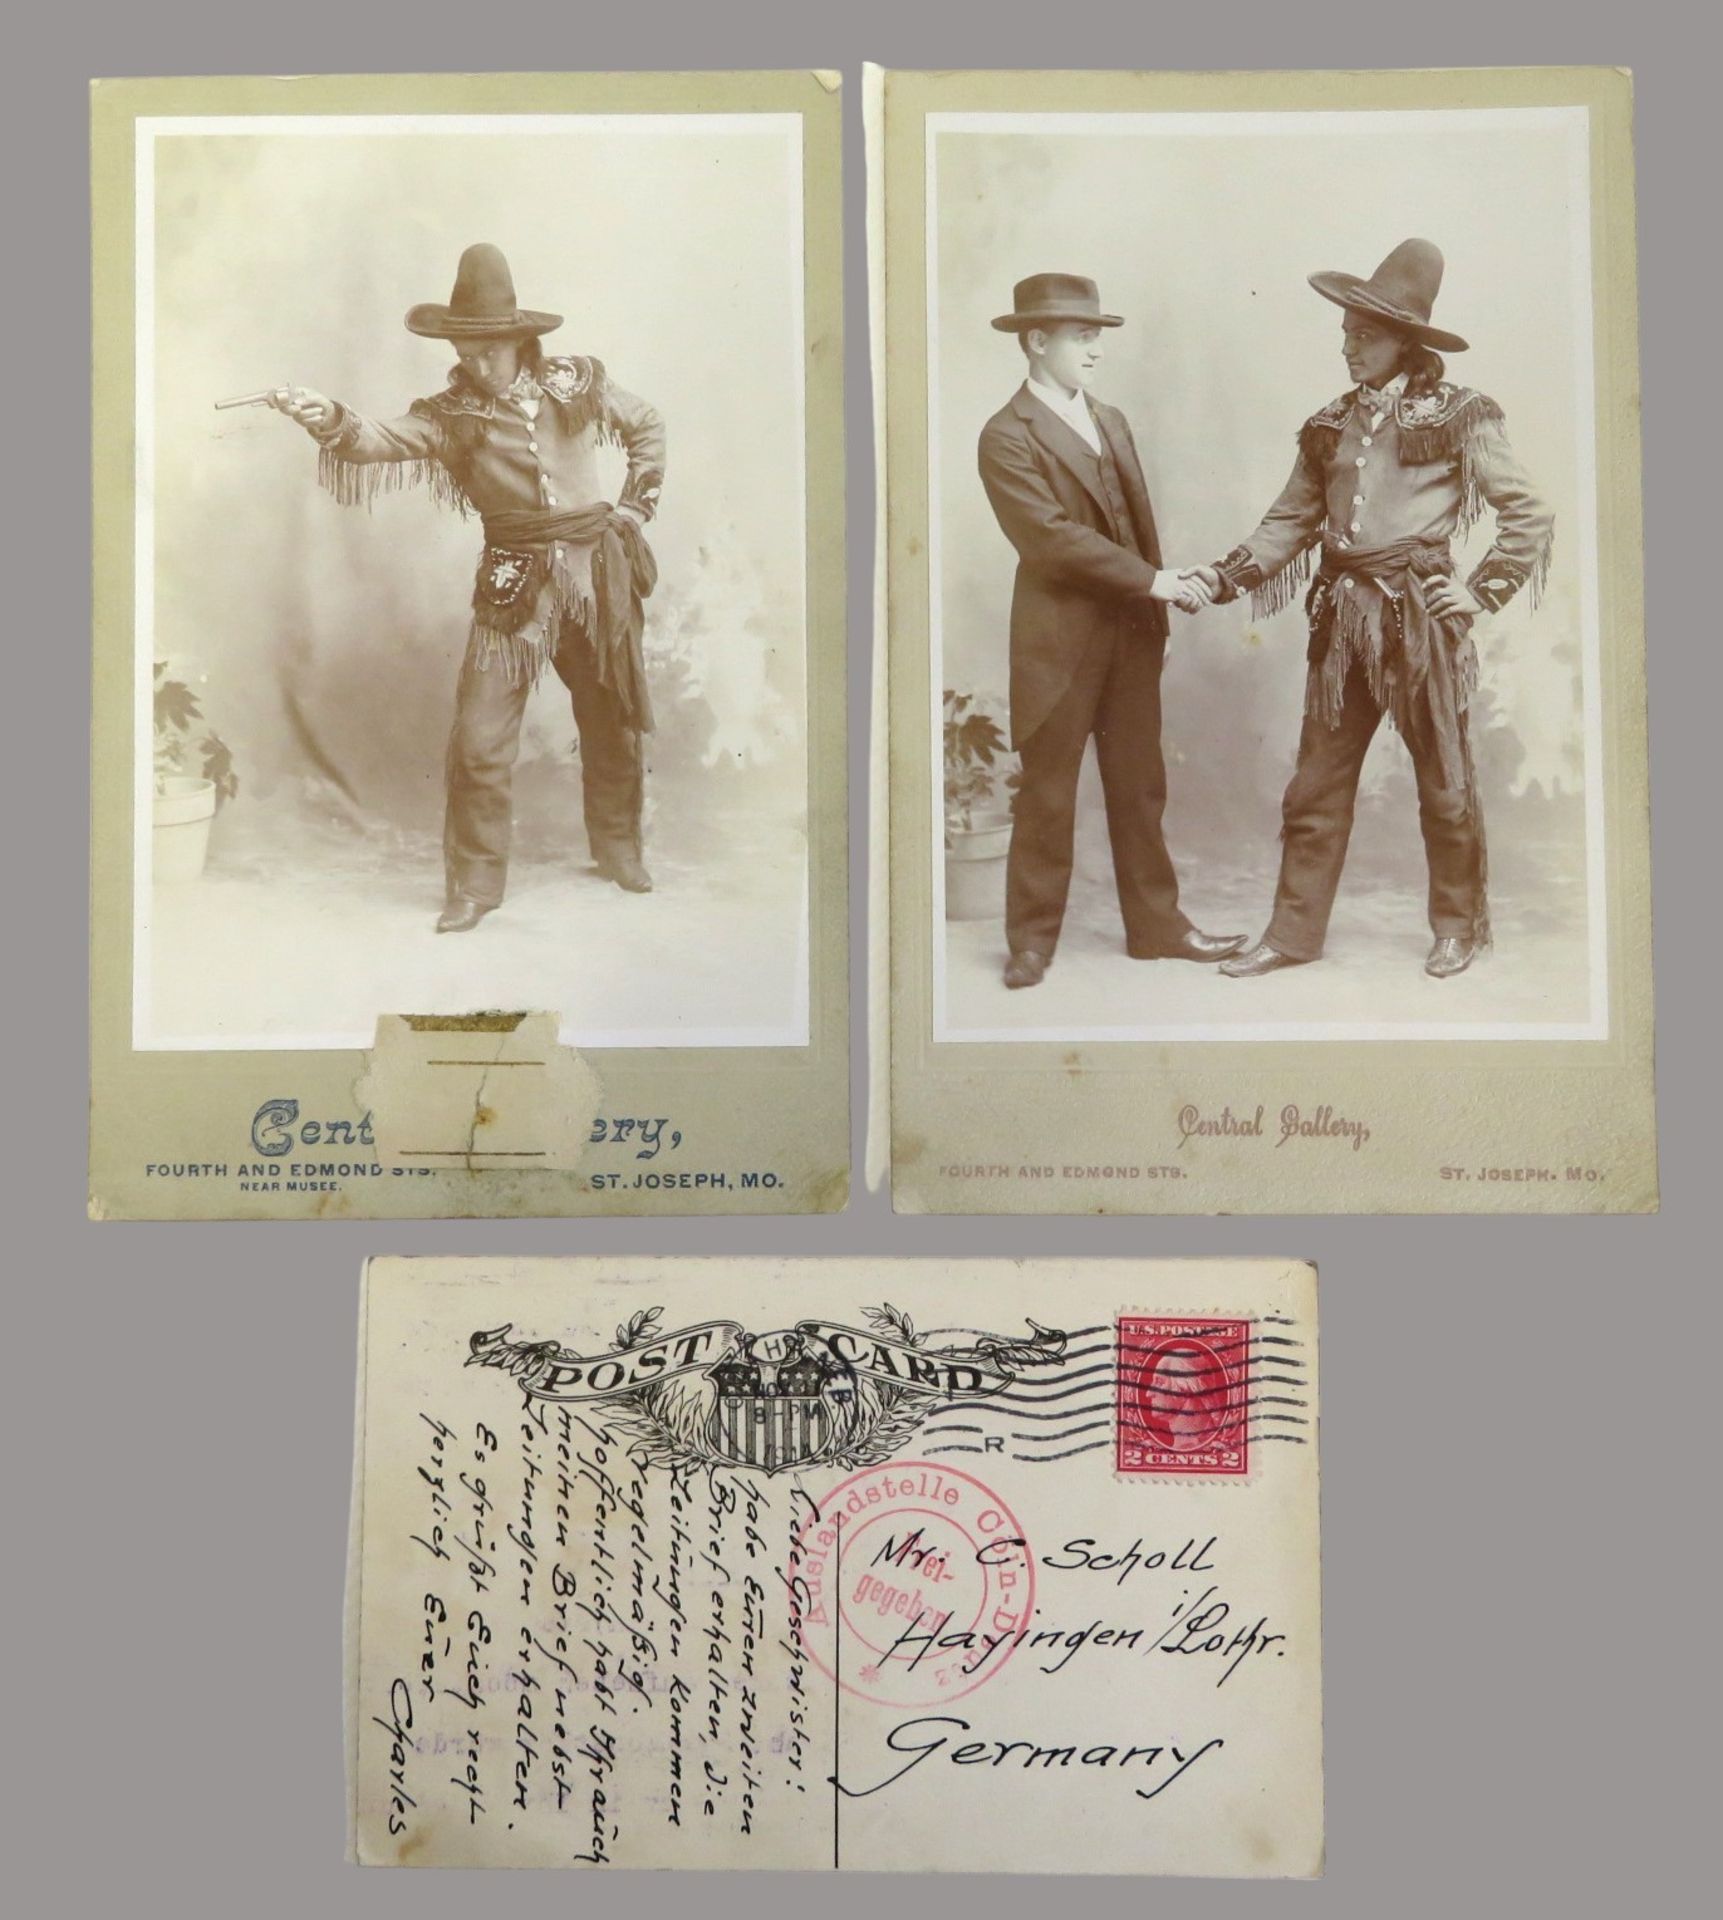 2 originale Fotografien des Cherokees Deerfoot, einmal davon mit Plein, Charles M., 1870 - 1920, Bi